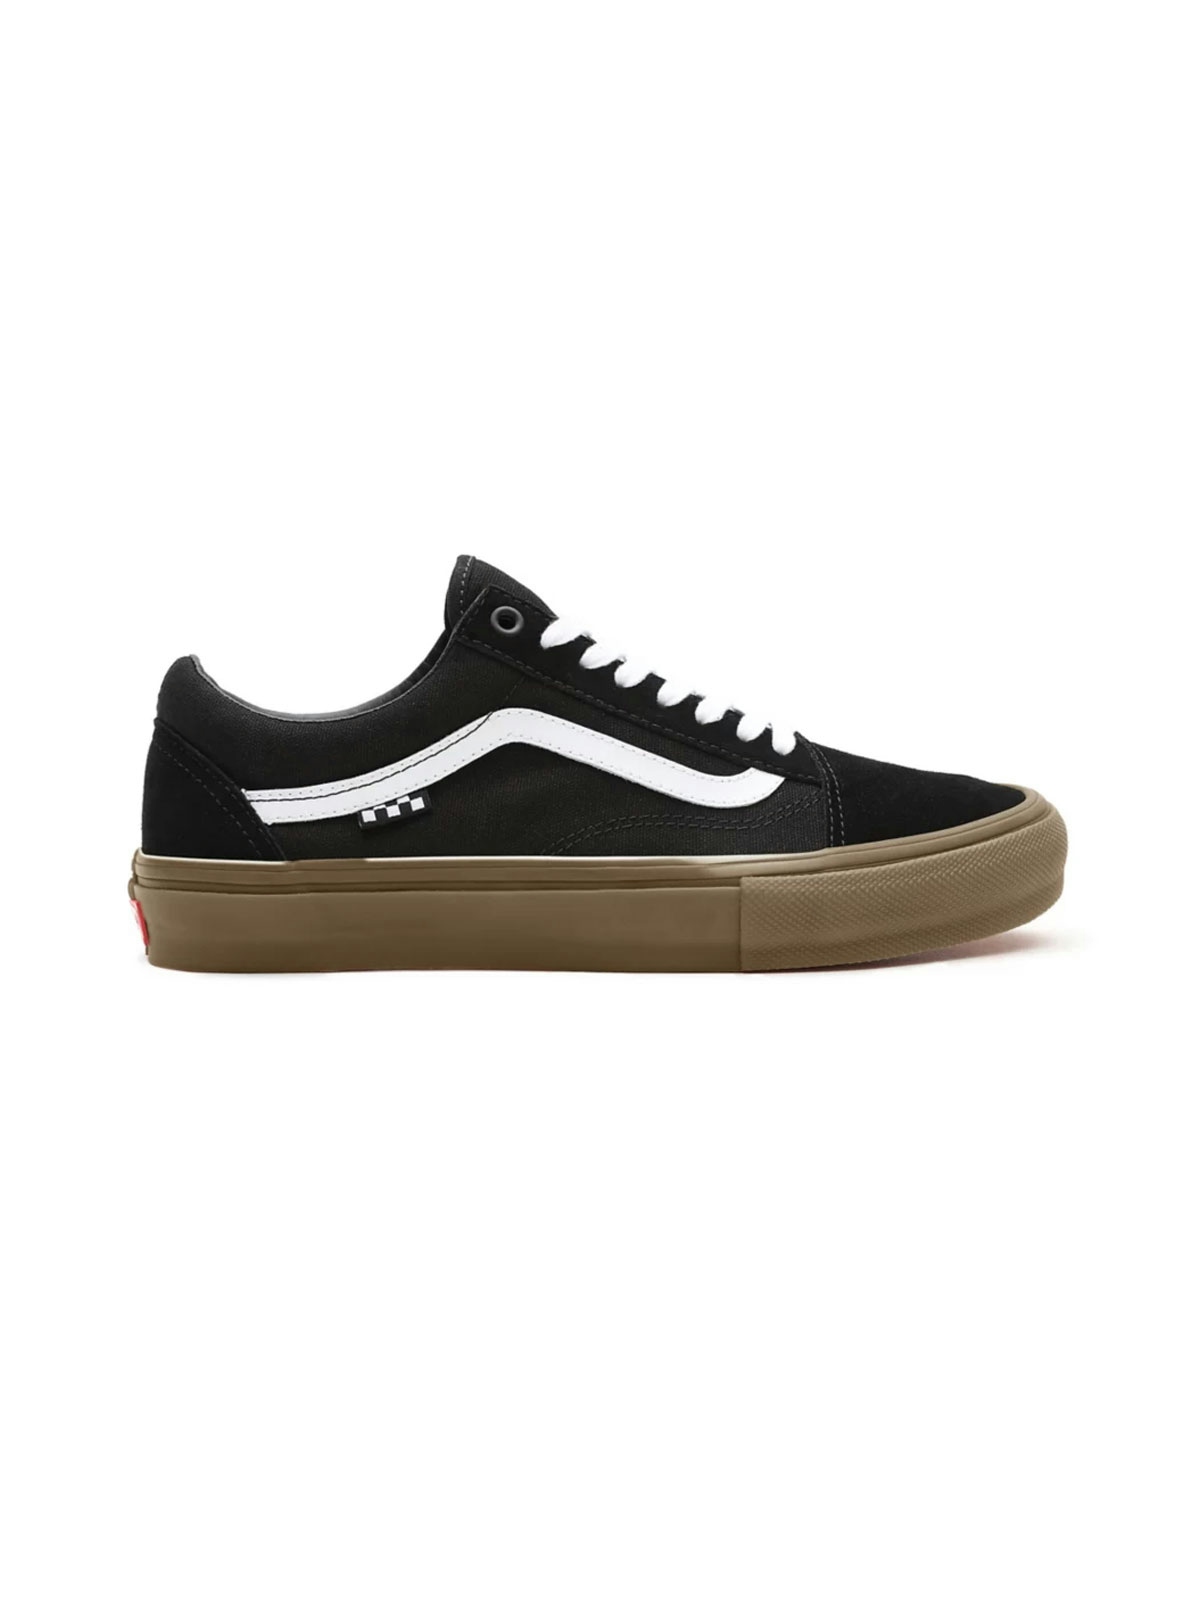 Vans Skate Old Skool Shoes Black/Gum 3